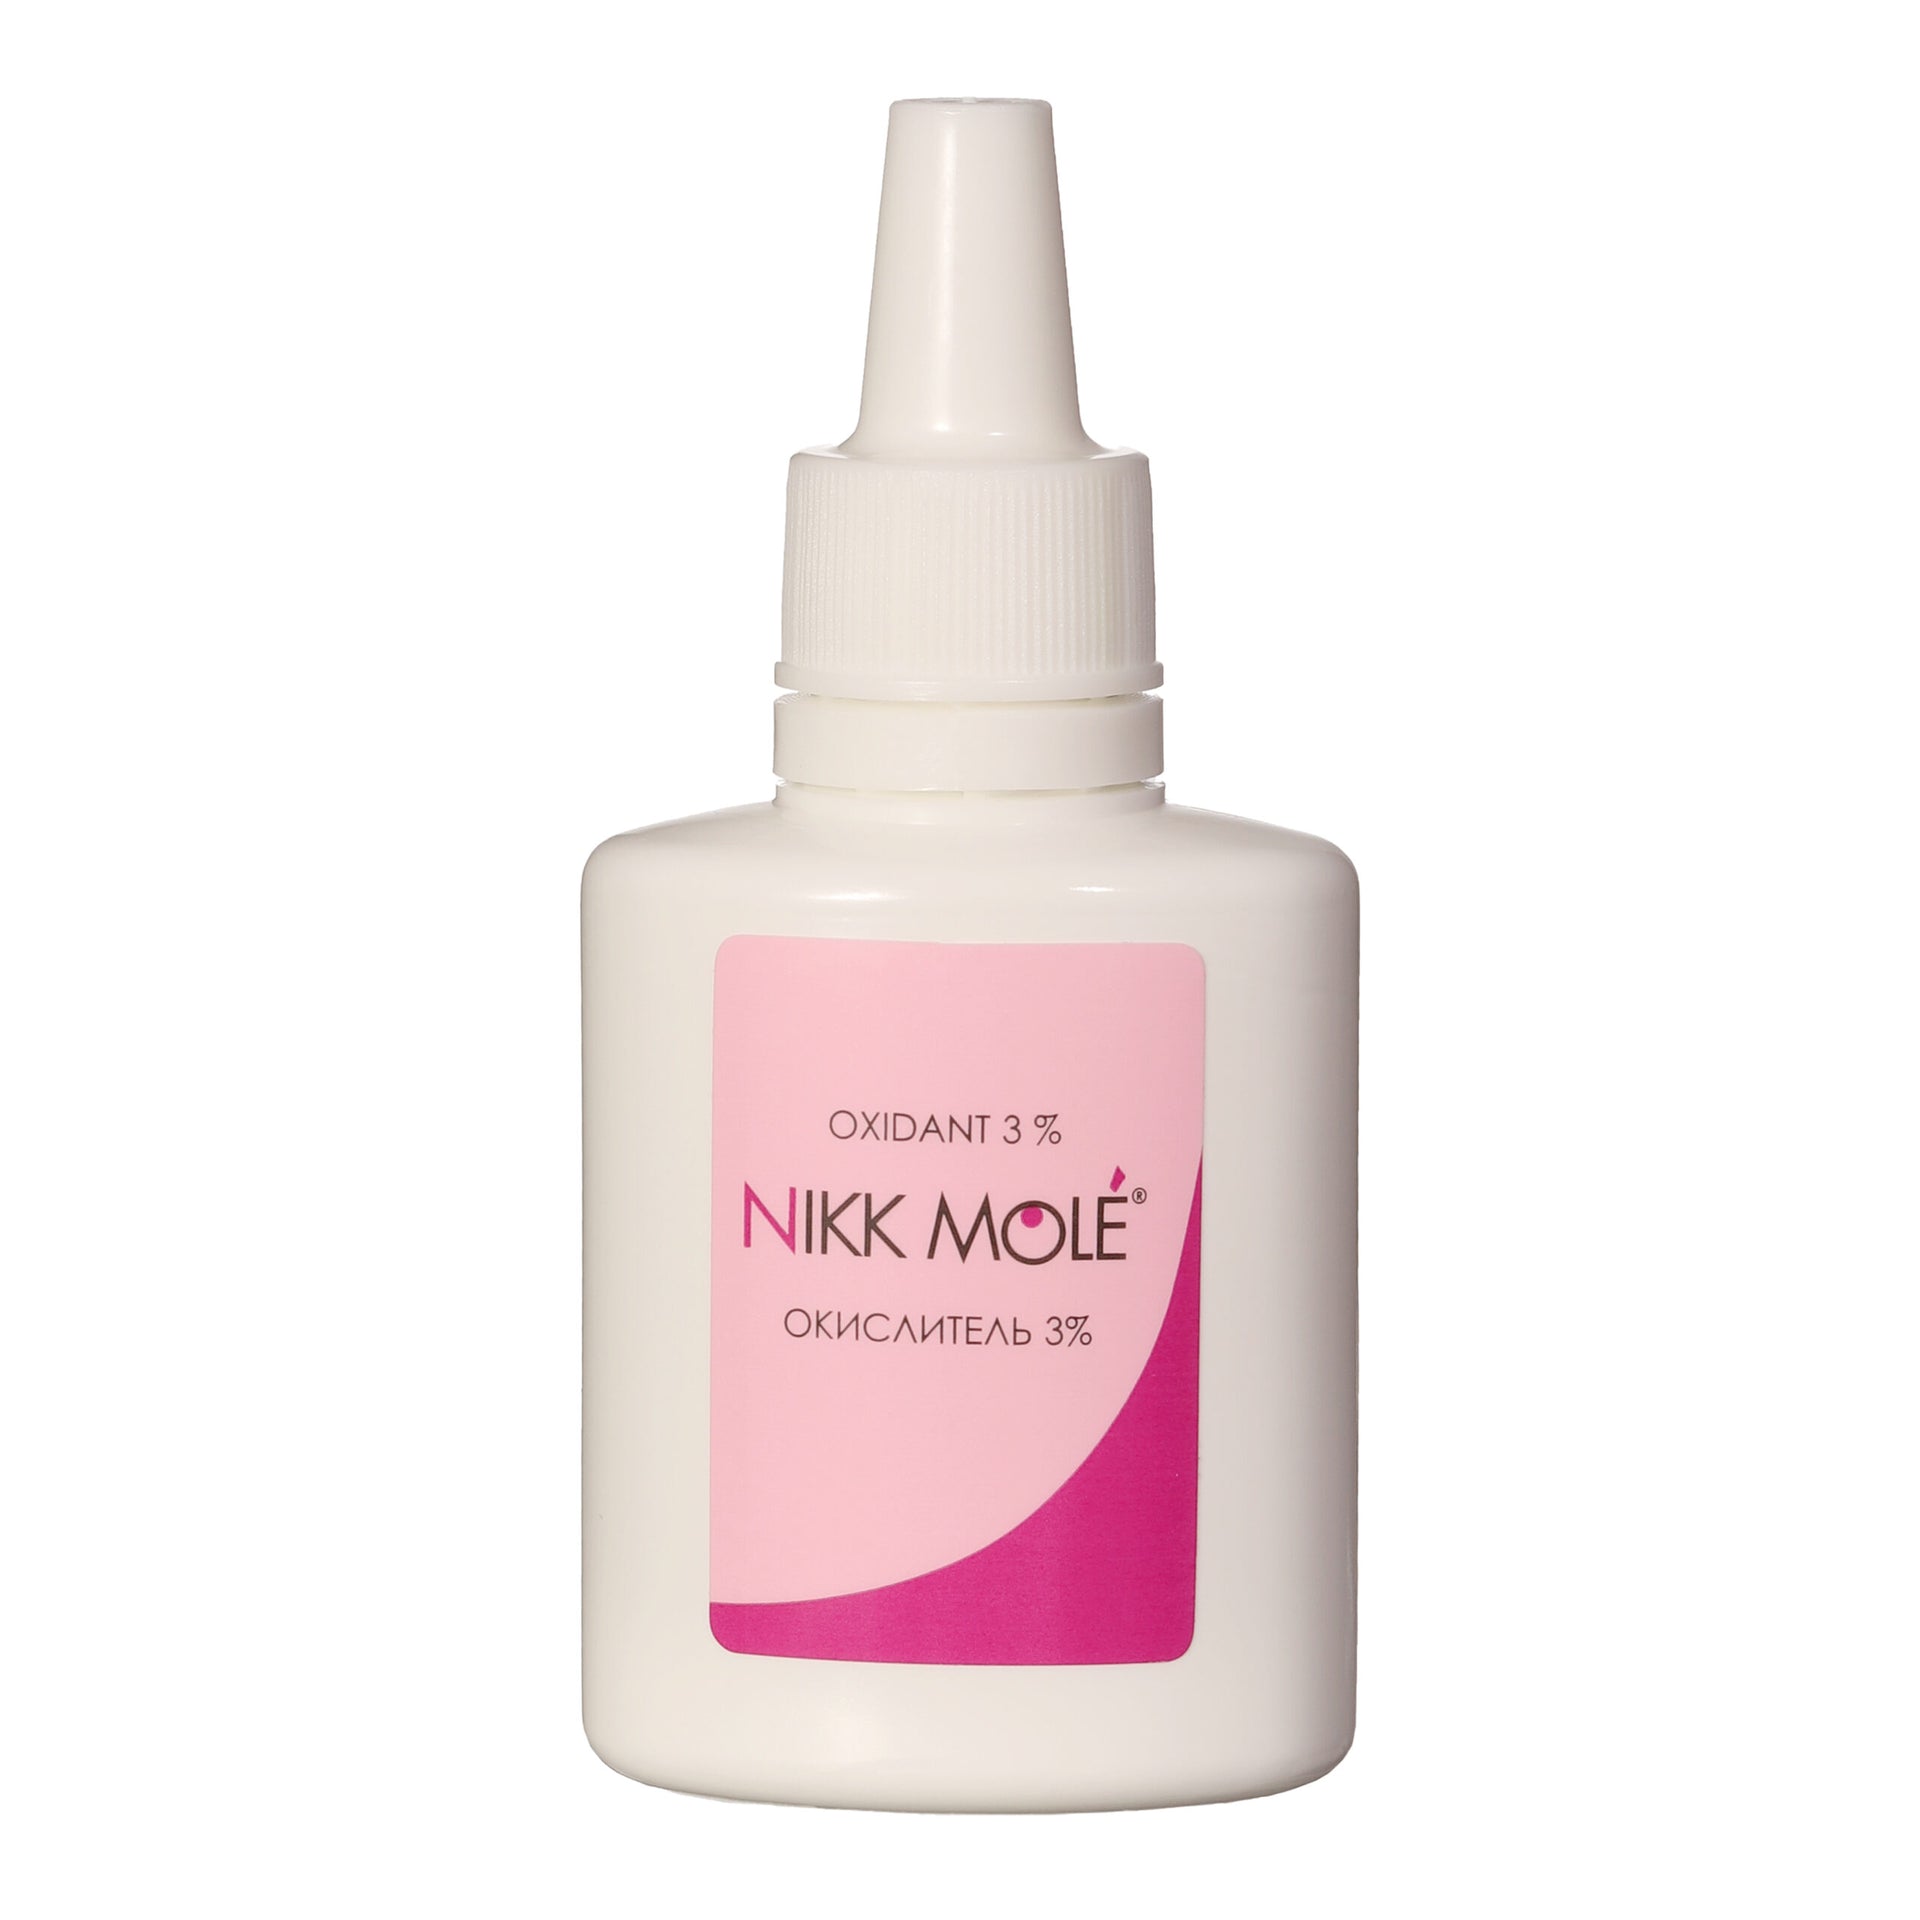 Nikk Mole - Oxidant 3%